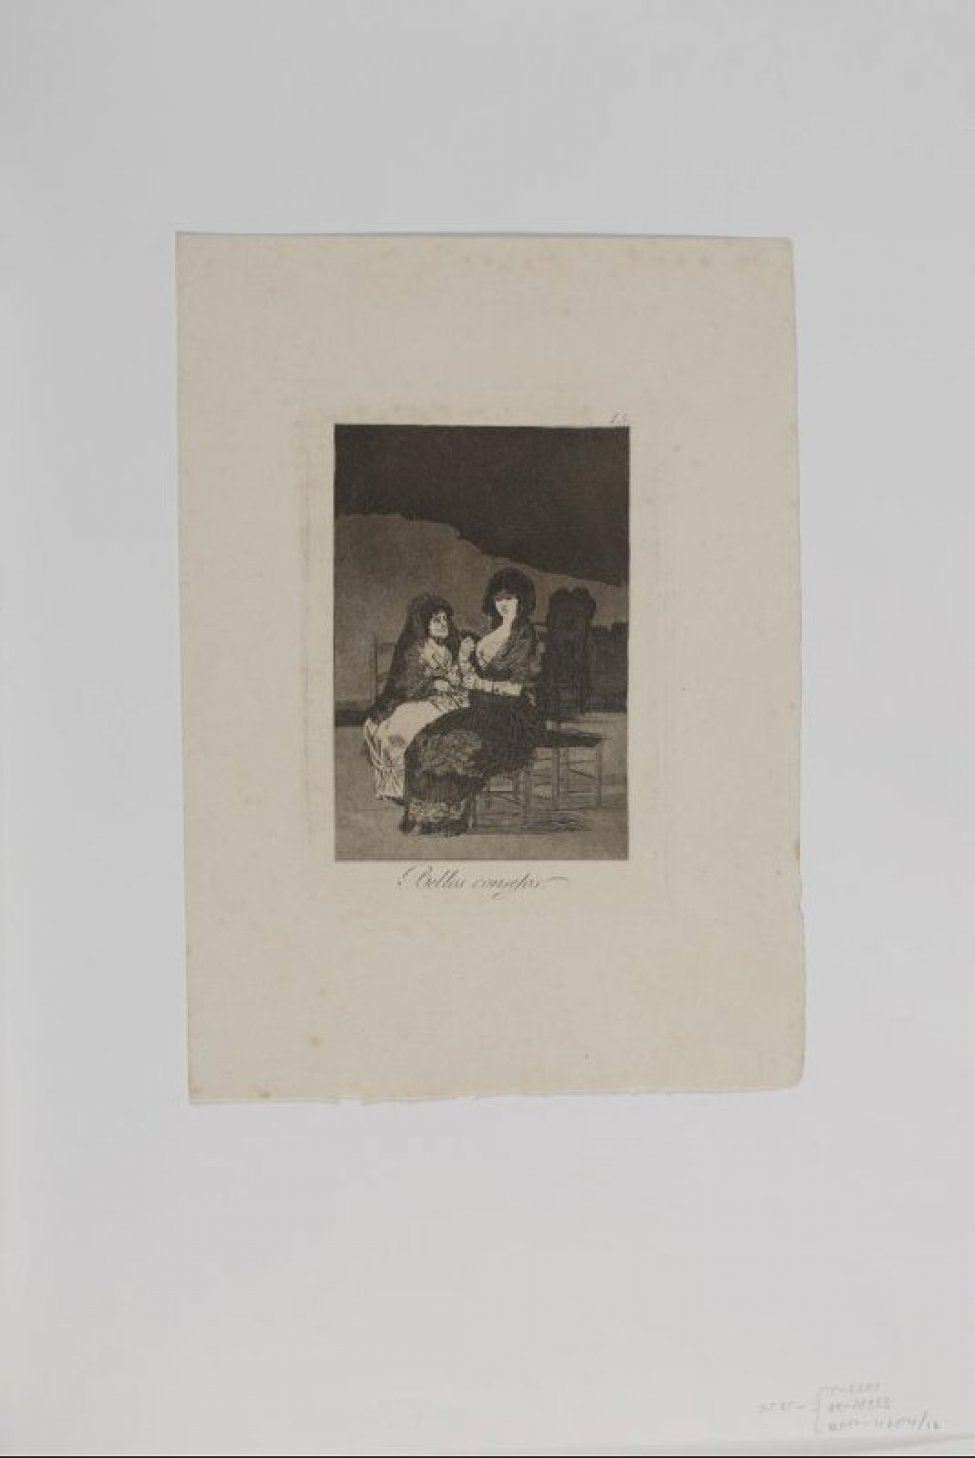 В центре композиции  изображены две  женщины, сидящие на стульях. Справа - молодая женщина в 3/4 повороте, в длинном темном платье. Голова изображена прямо, повернута к левому плечу, взгляд опущен. Руки согнуты в локтях, в правой руке веер. За молодой женщиной, слева - пожилая женщина в светлом платье. Ее голова повернута вправо, на молодую женщину. В левой руке зажат сложенный веер. На заднем плане силуэты стульев, верхняя часть фона значительно темнее.
Над изображением, в правом верхнем углу цифра «15.», под изображением надпись «Bellos consejos.»